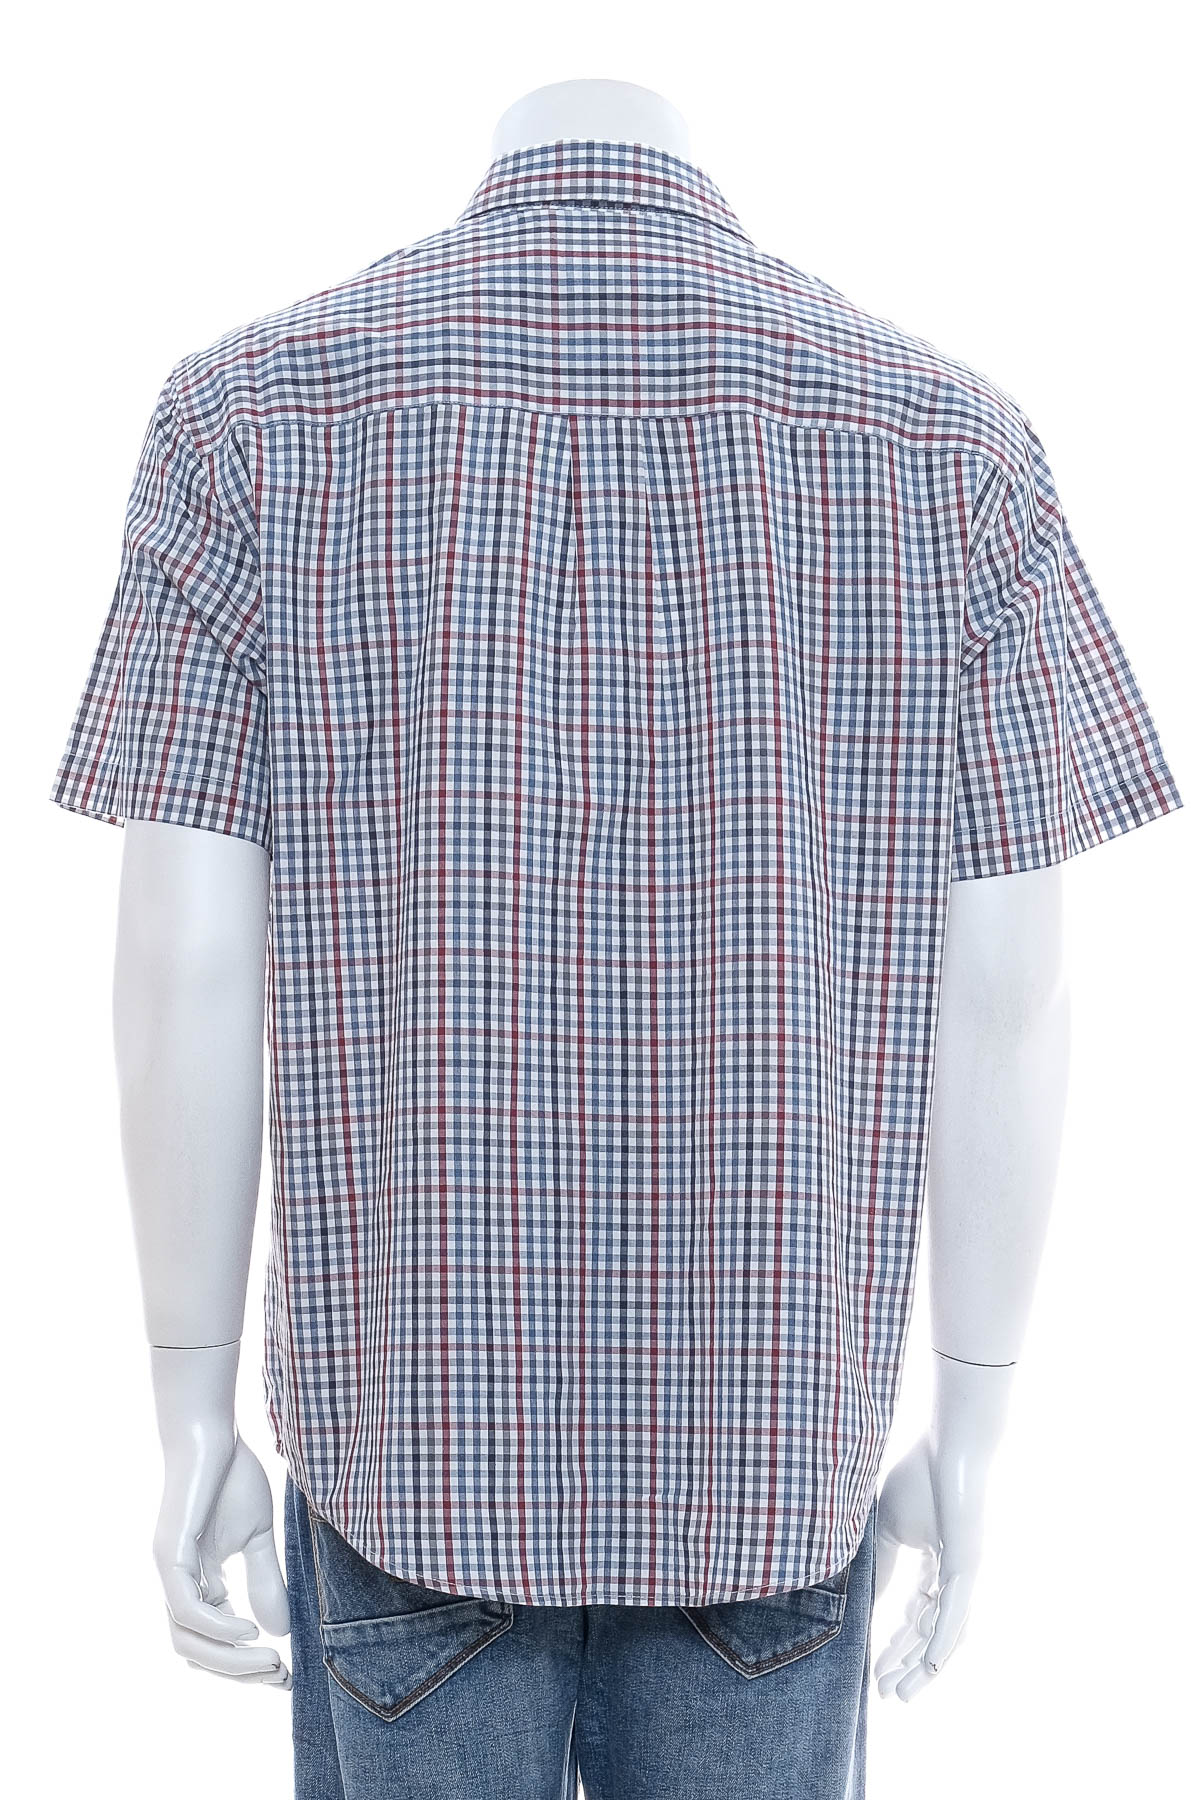 Ανδρικό πουκάμισο - Van Heusen - 1